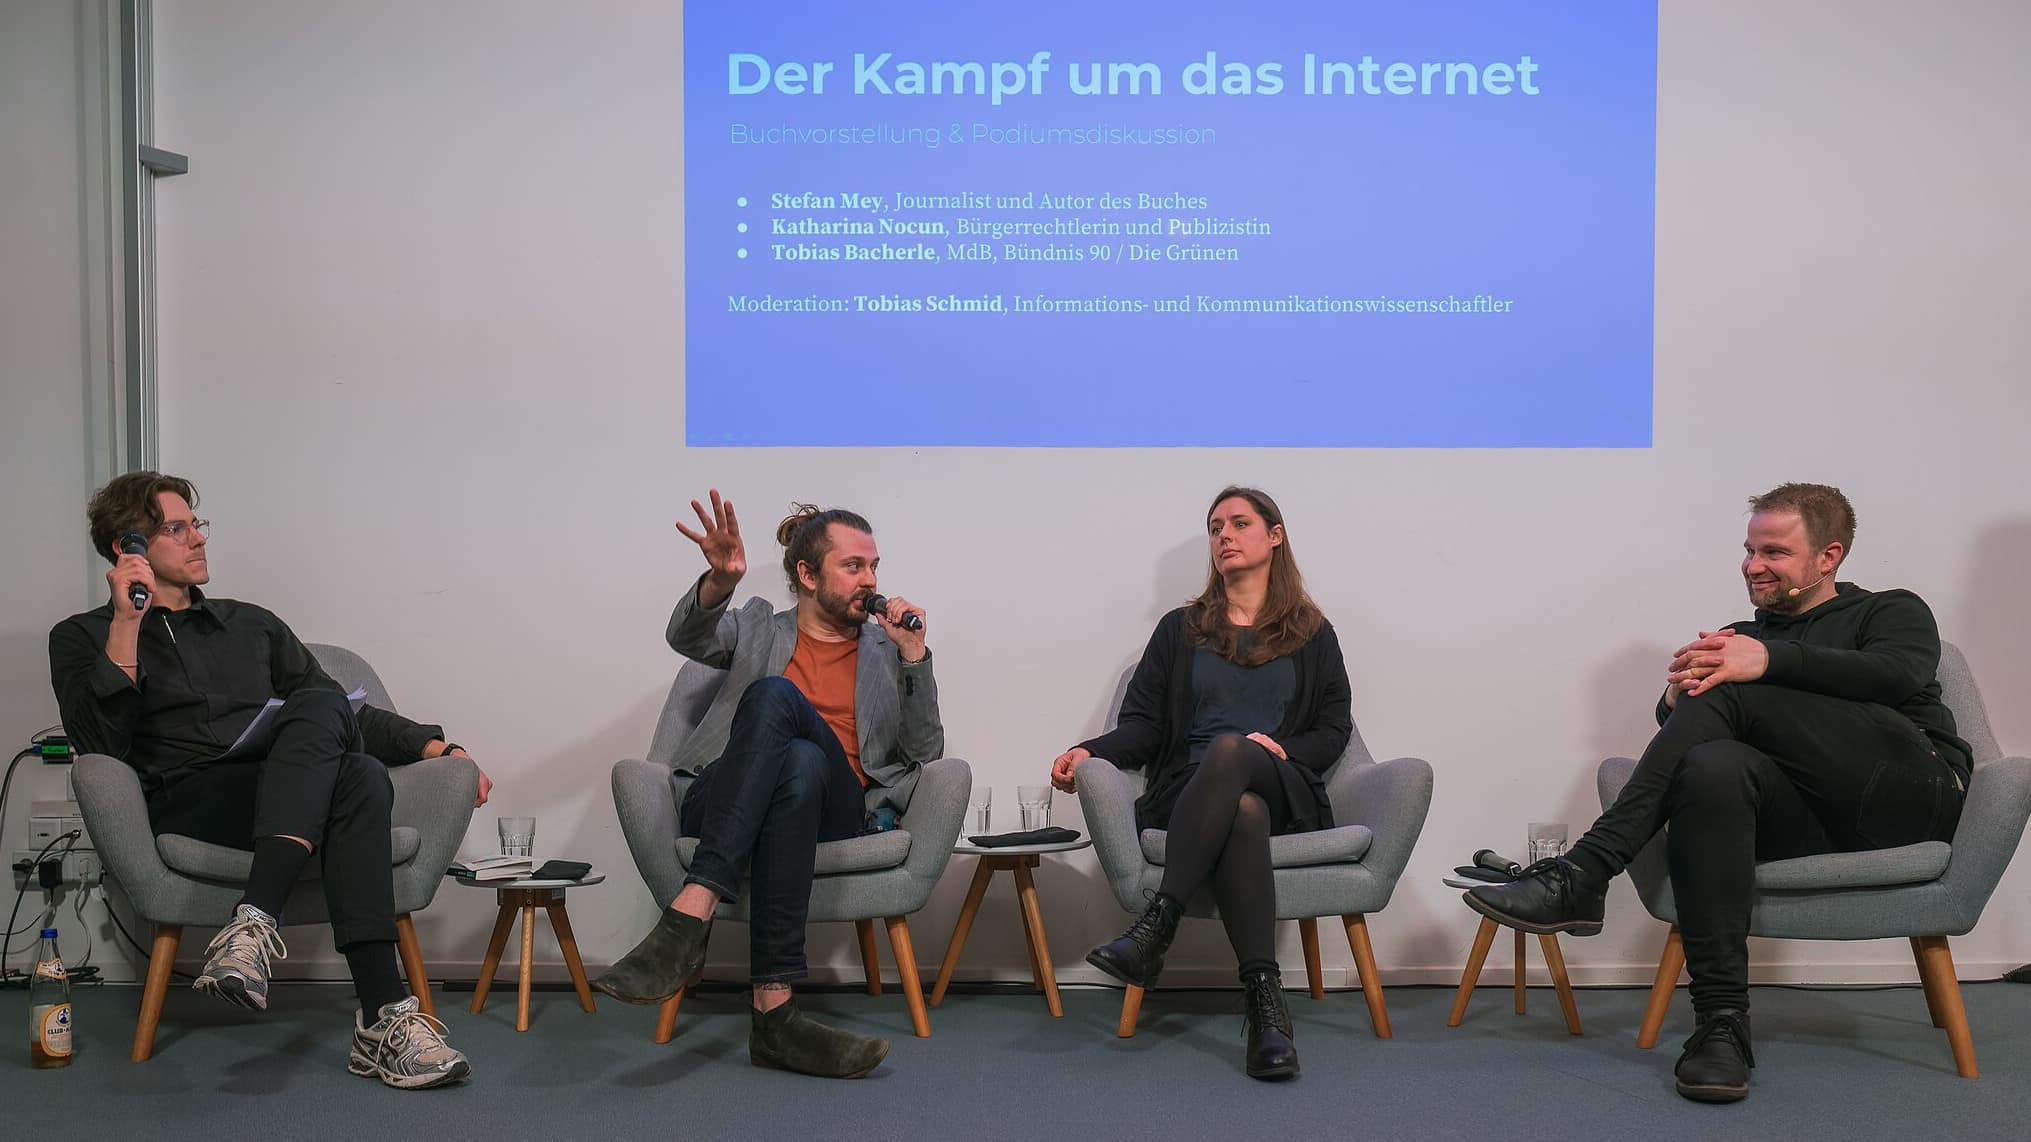 Podiumsdiskussion "Der Kampf um das Internet"